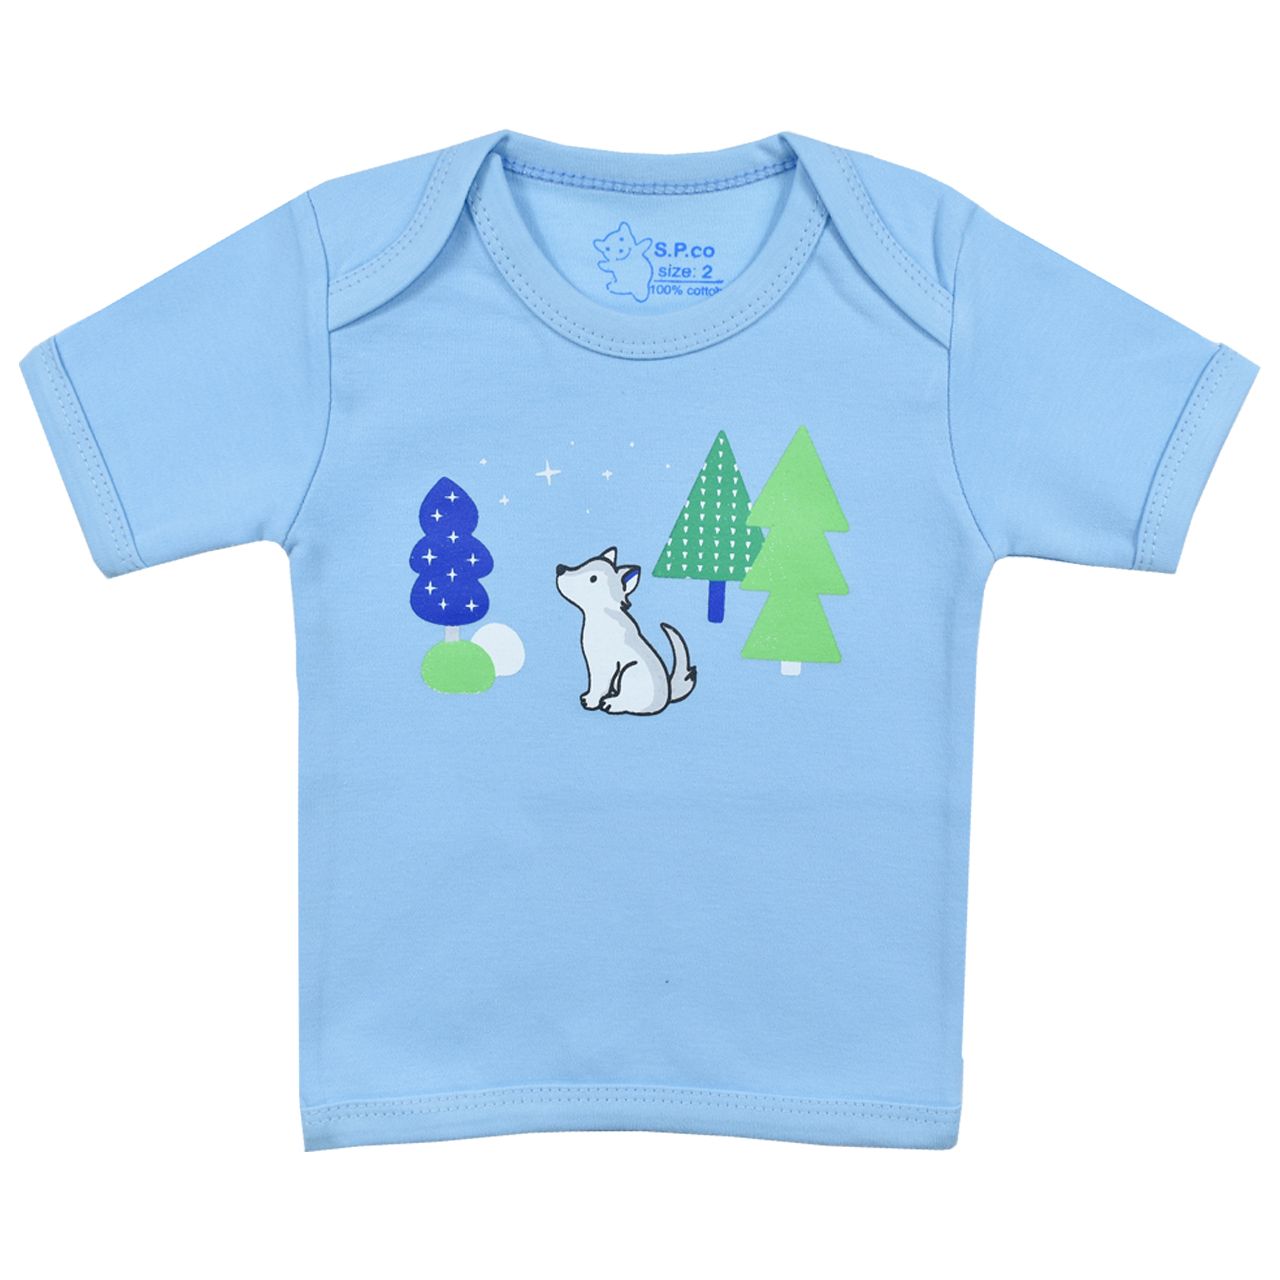 تی شرت آستین کوتاه نوزادی اسپیکو کد 300 -2 بسته دو عددی -  - 2